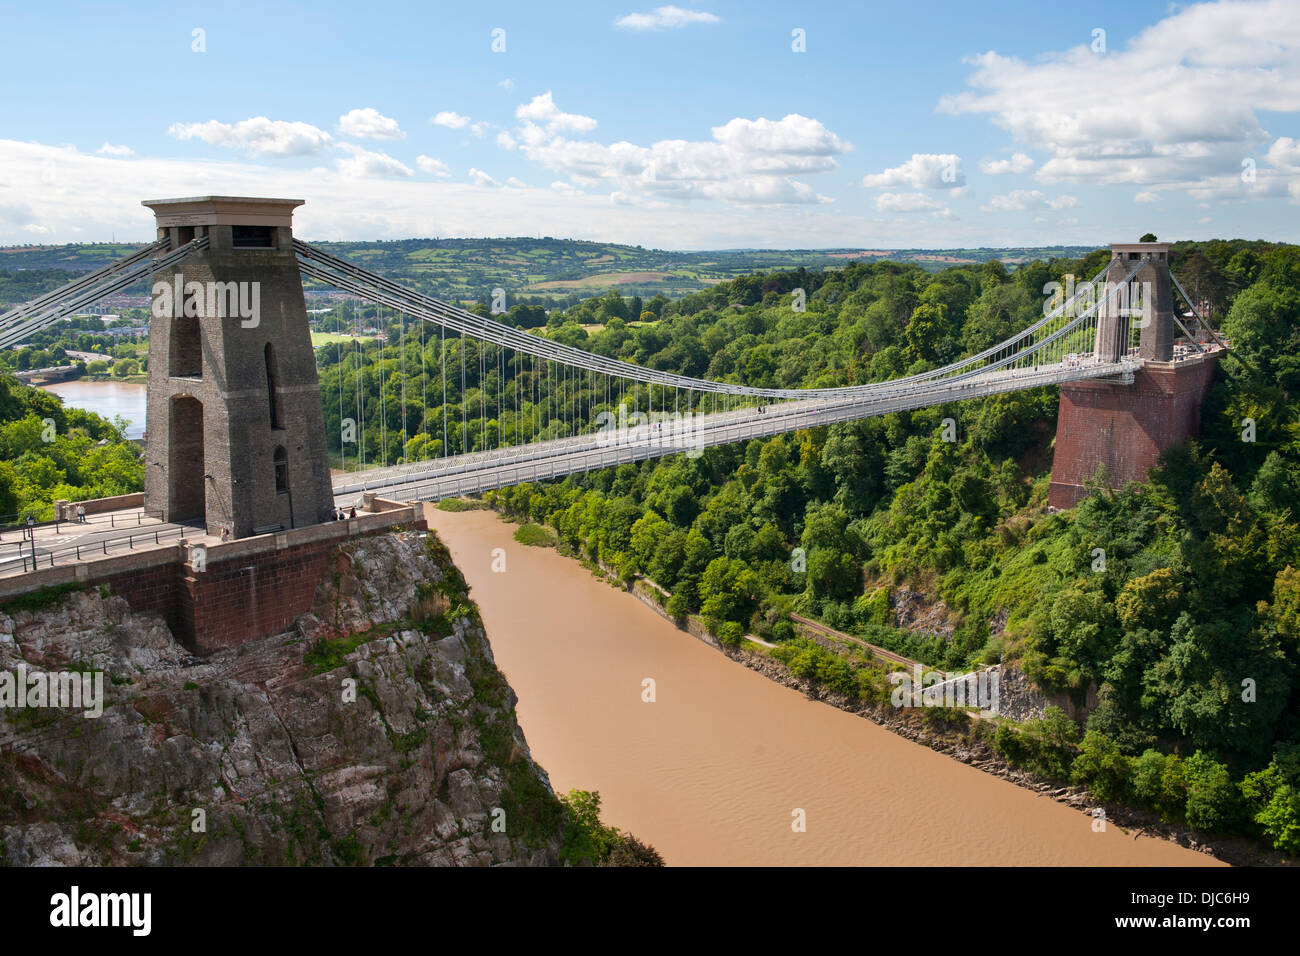 Le Clifton Suspension Bridge enjambant la rivière Avon à Bristol, Angleterre. Banque D'Images